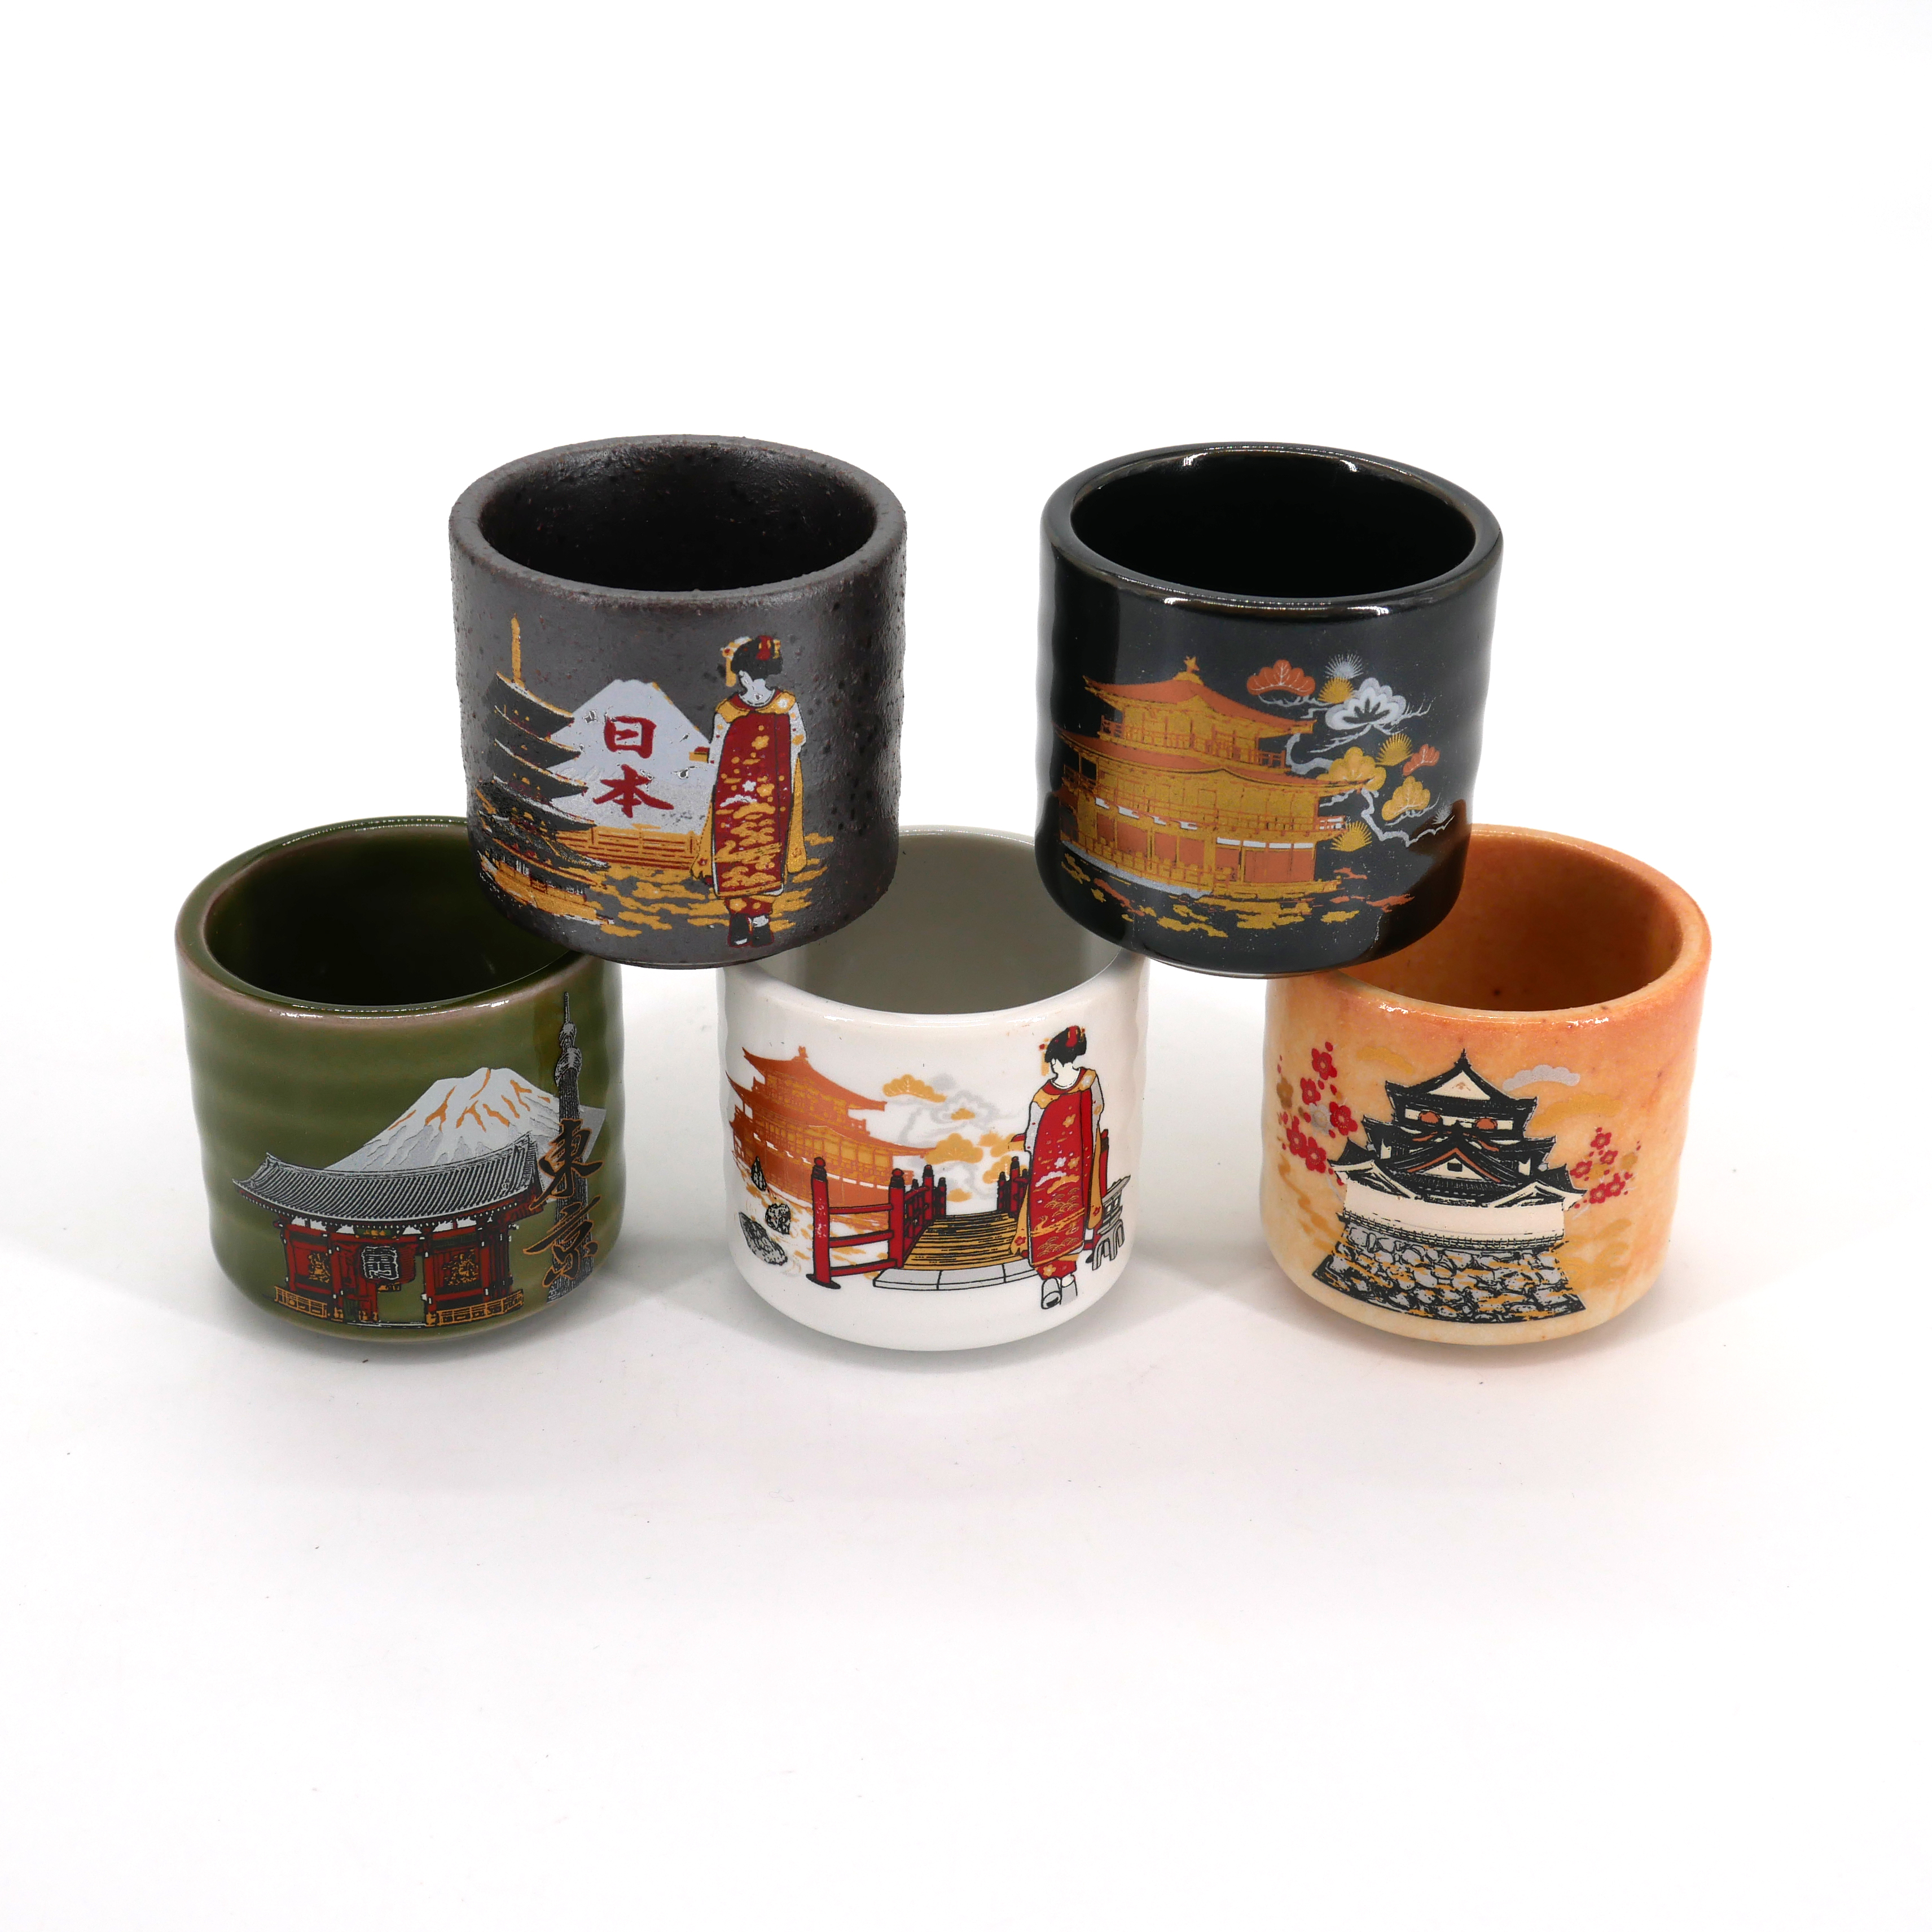 Bottiglia di Sake in Ceramica Fatta a Mano in Ceramica da 360 ml e 4 Tazze JNN Set di 5 Pezzi di Sake Giapponese Design Tradizionale Dipinto a Mano Ideale per Sake Giapponese 